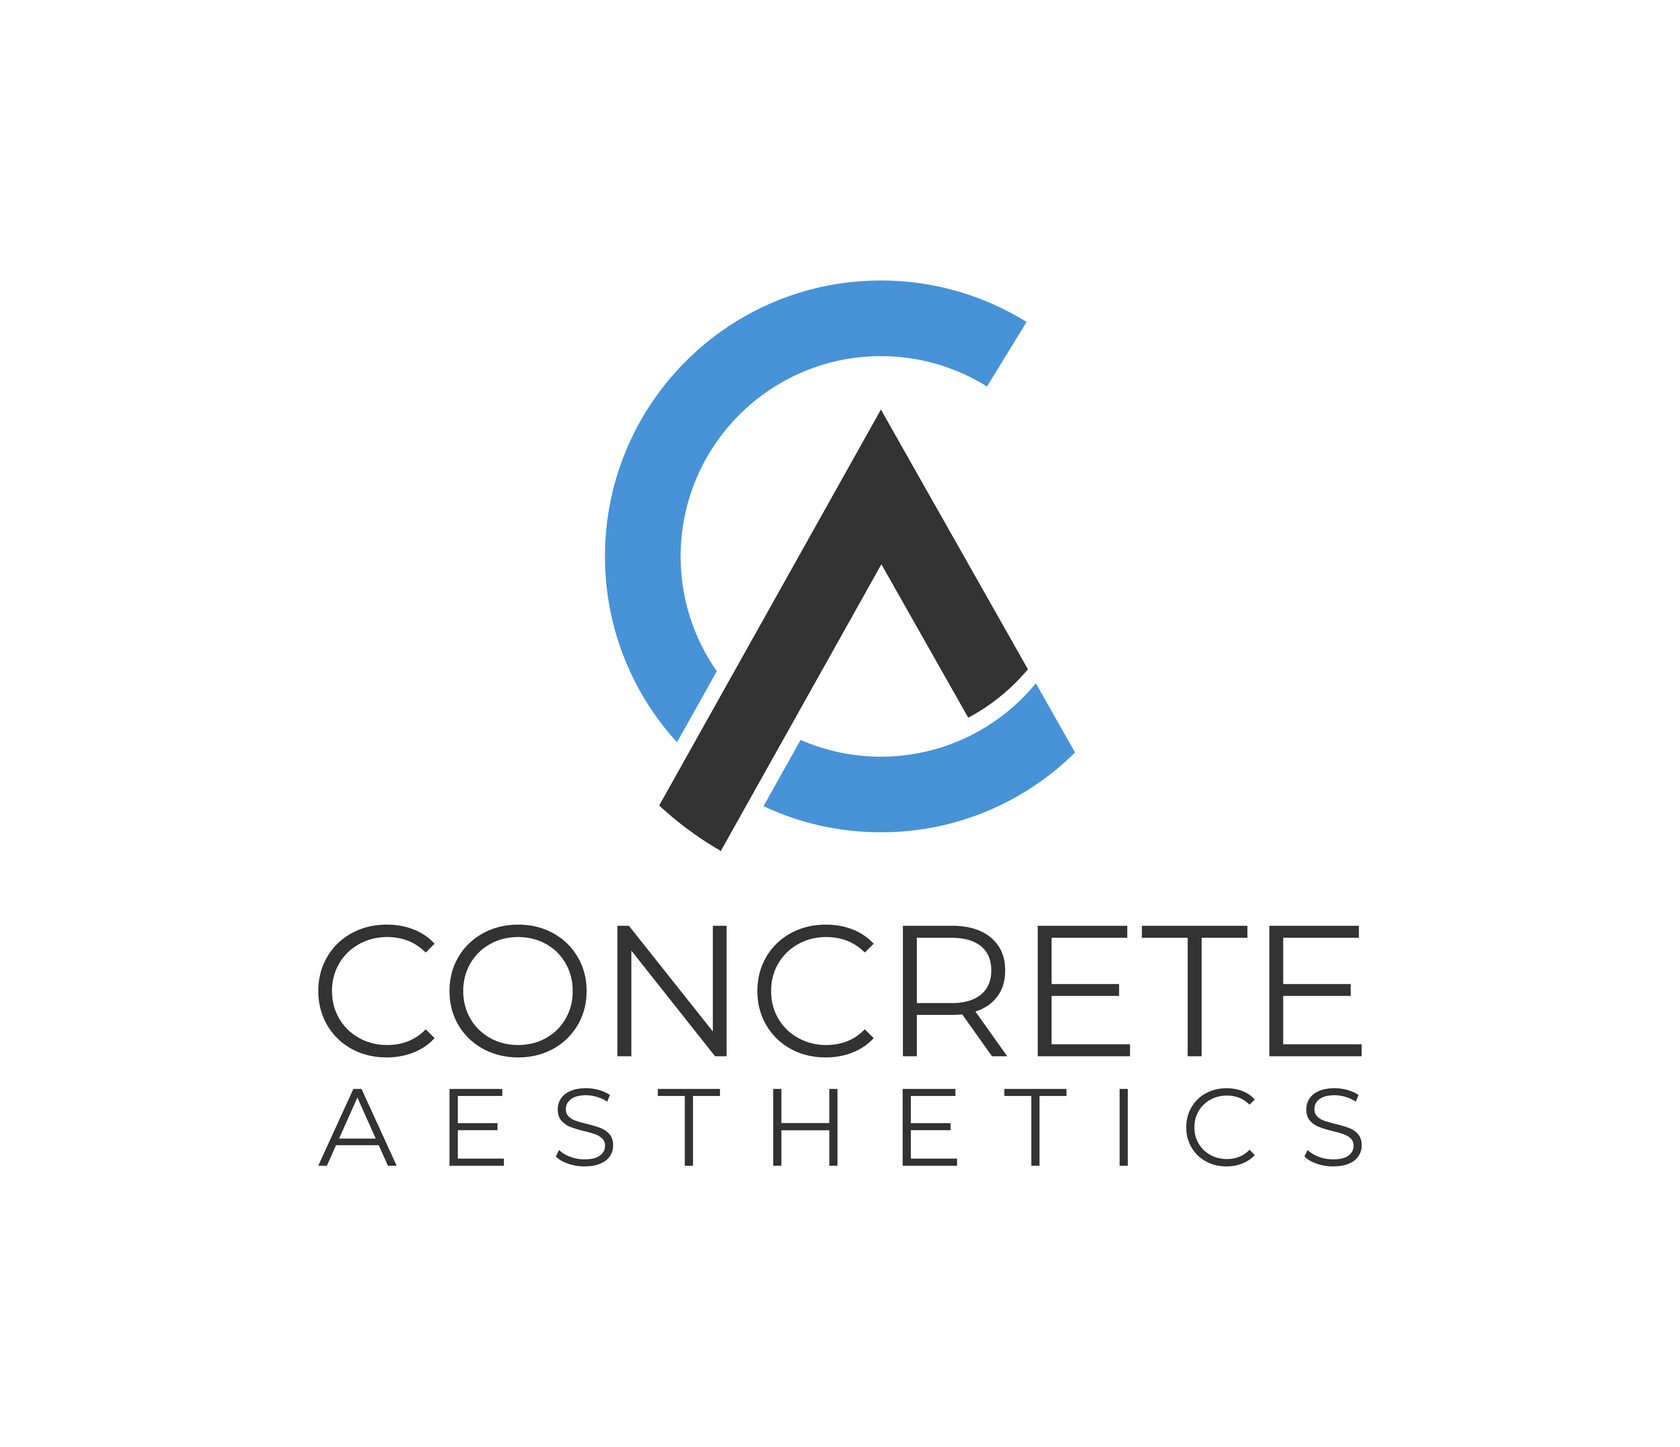 Concrete Aesthetics - производство столов, светильников, салфетниц из бетона.